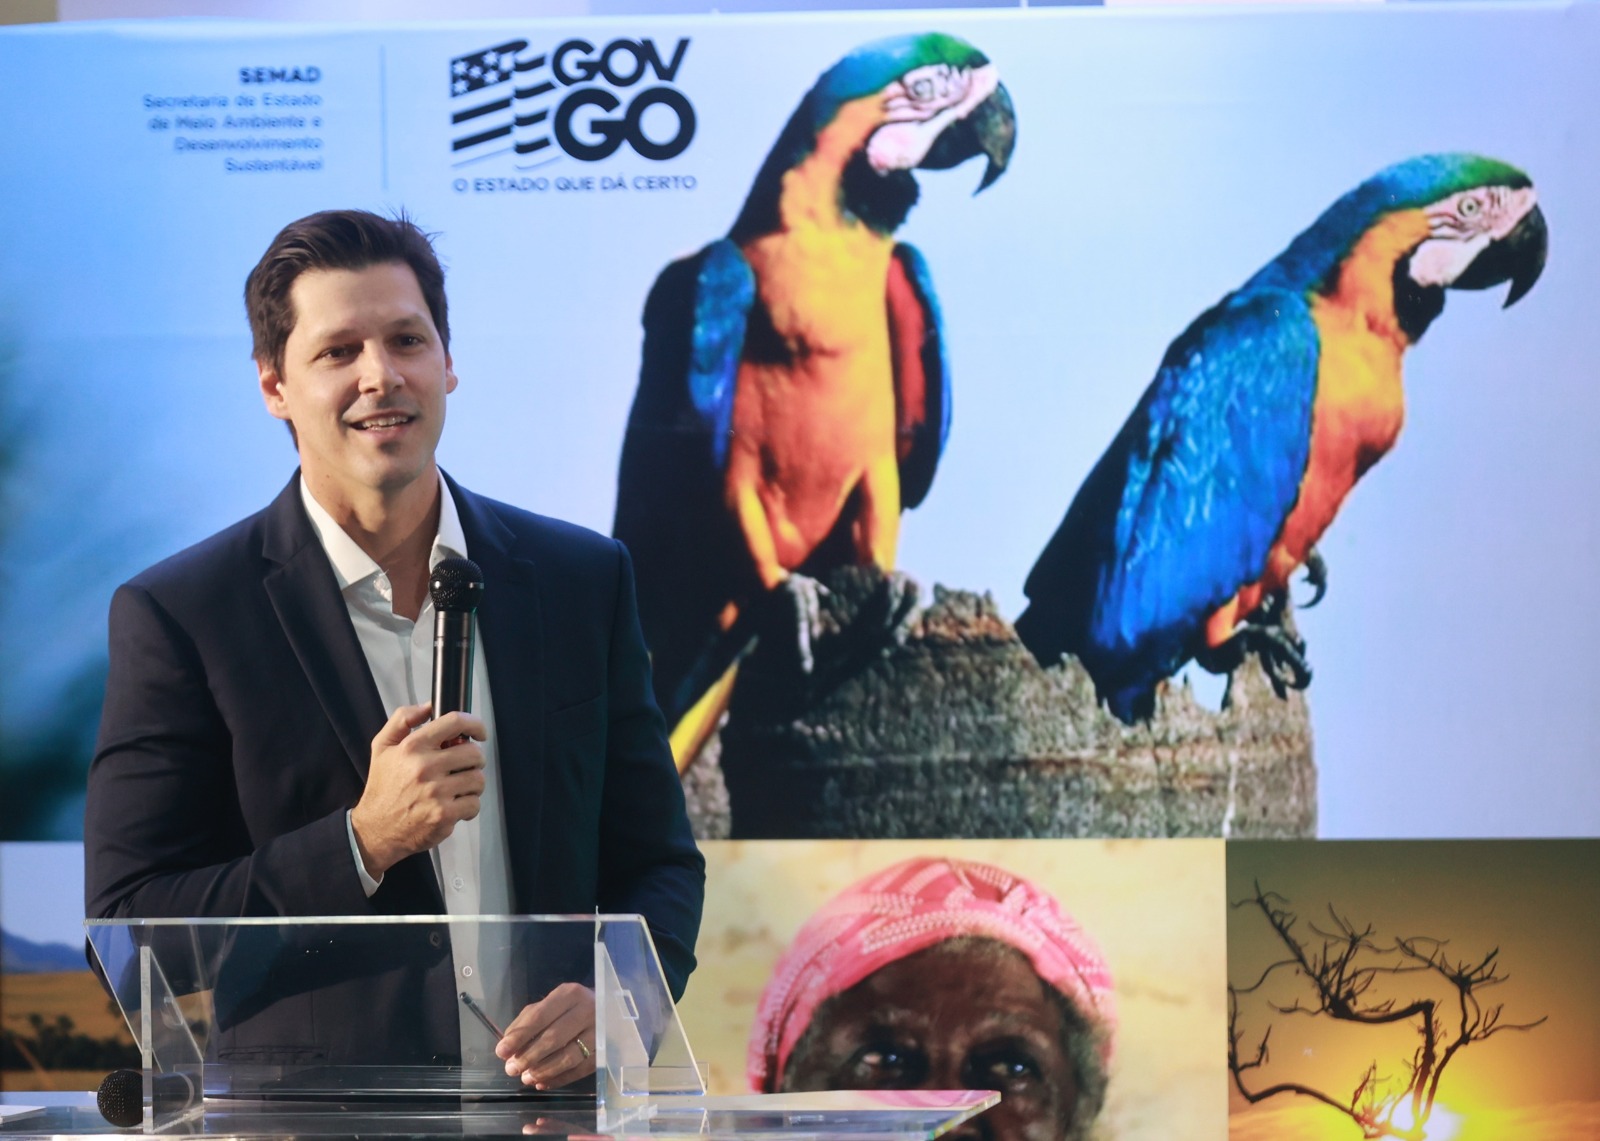 Durante a Semana do Meio Ambiente, vice-governador Daniel Vilela assina protocolo para criar fórum goiano de mudanças climáticas (Fotos: André Costa)